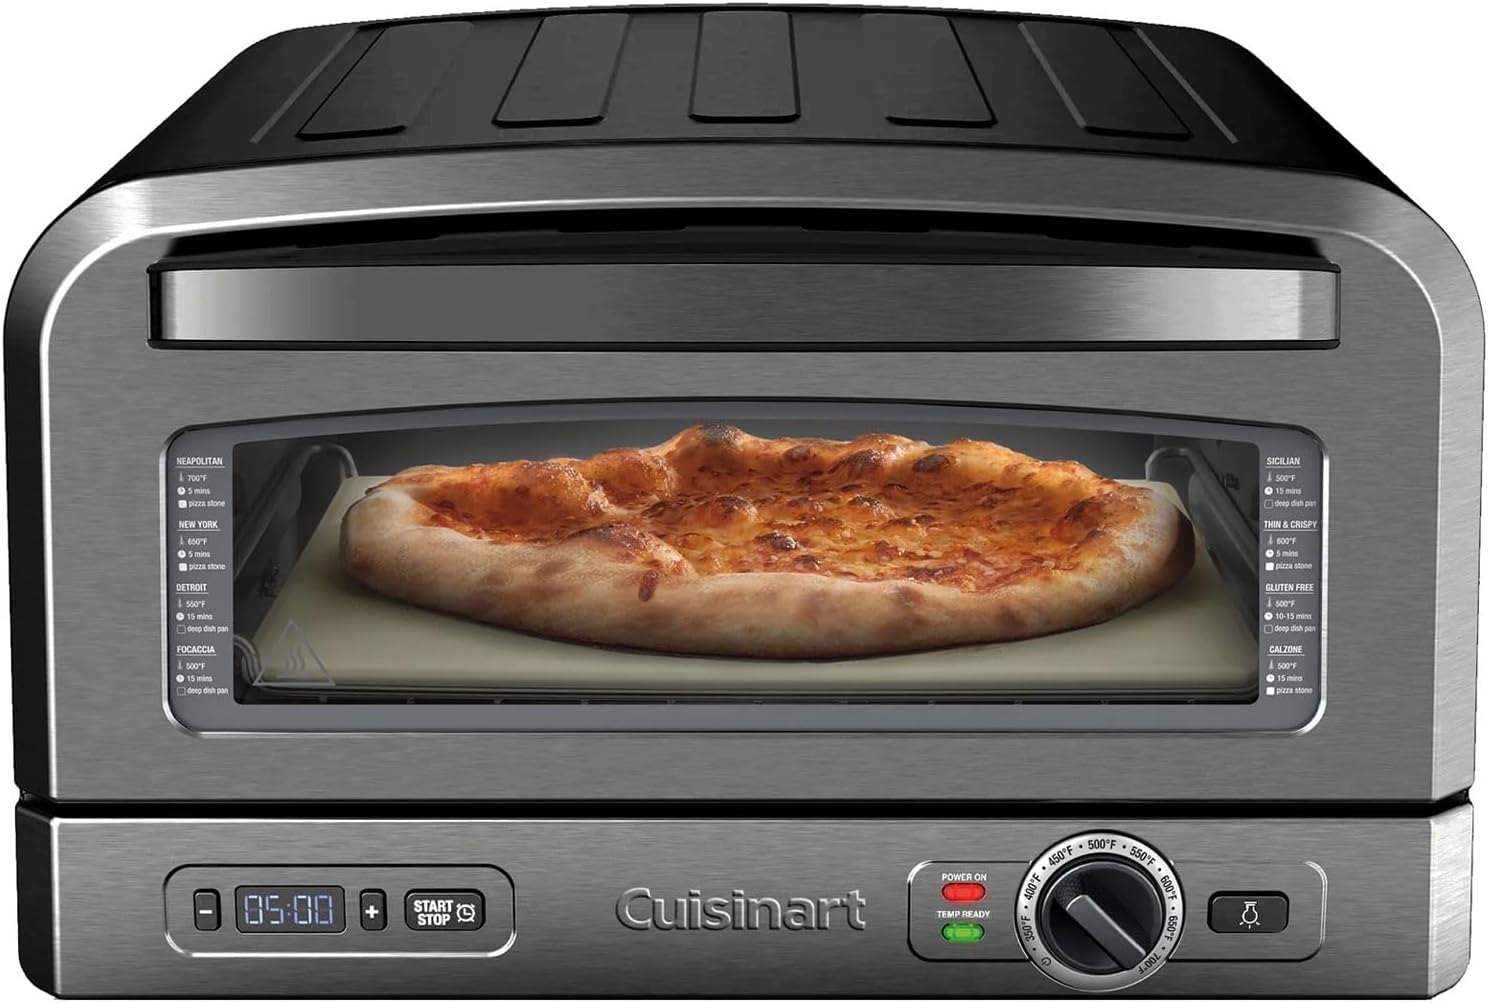 Cuisinart Indoor Portable Countertop Pizza Oven $150 + free s/h